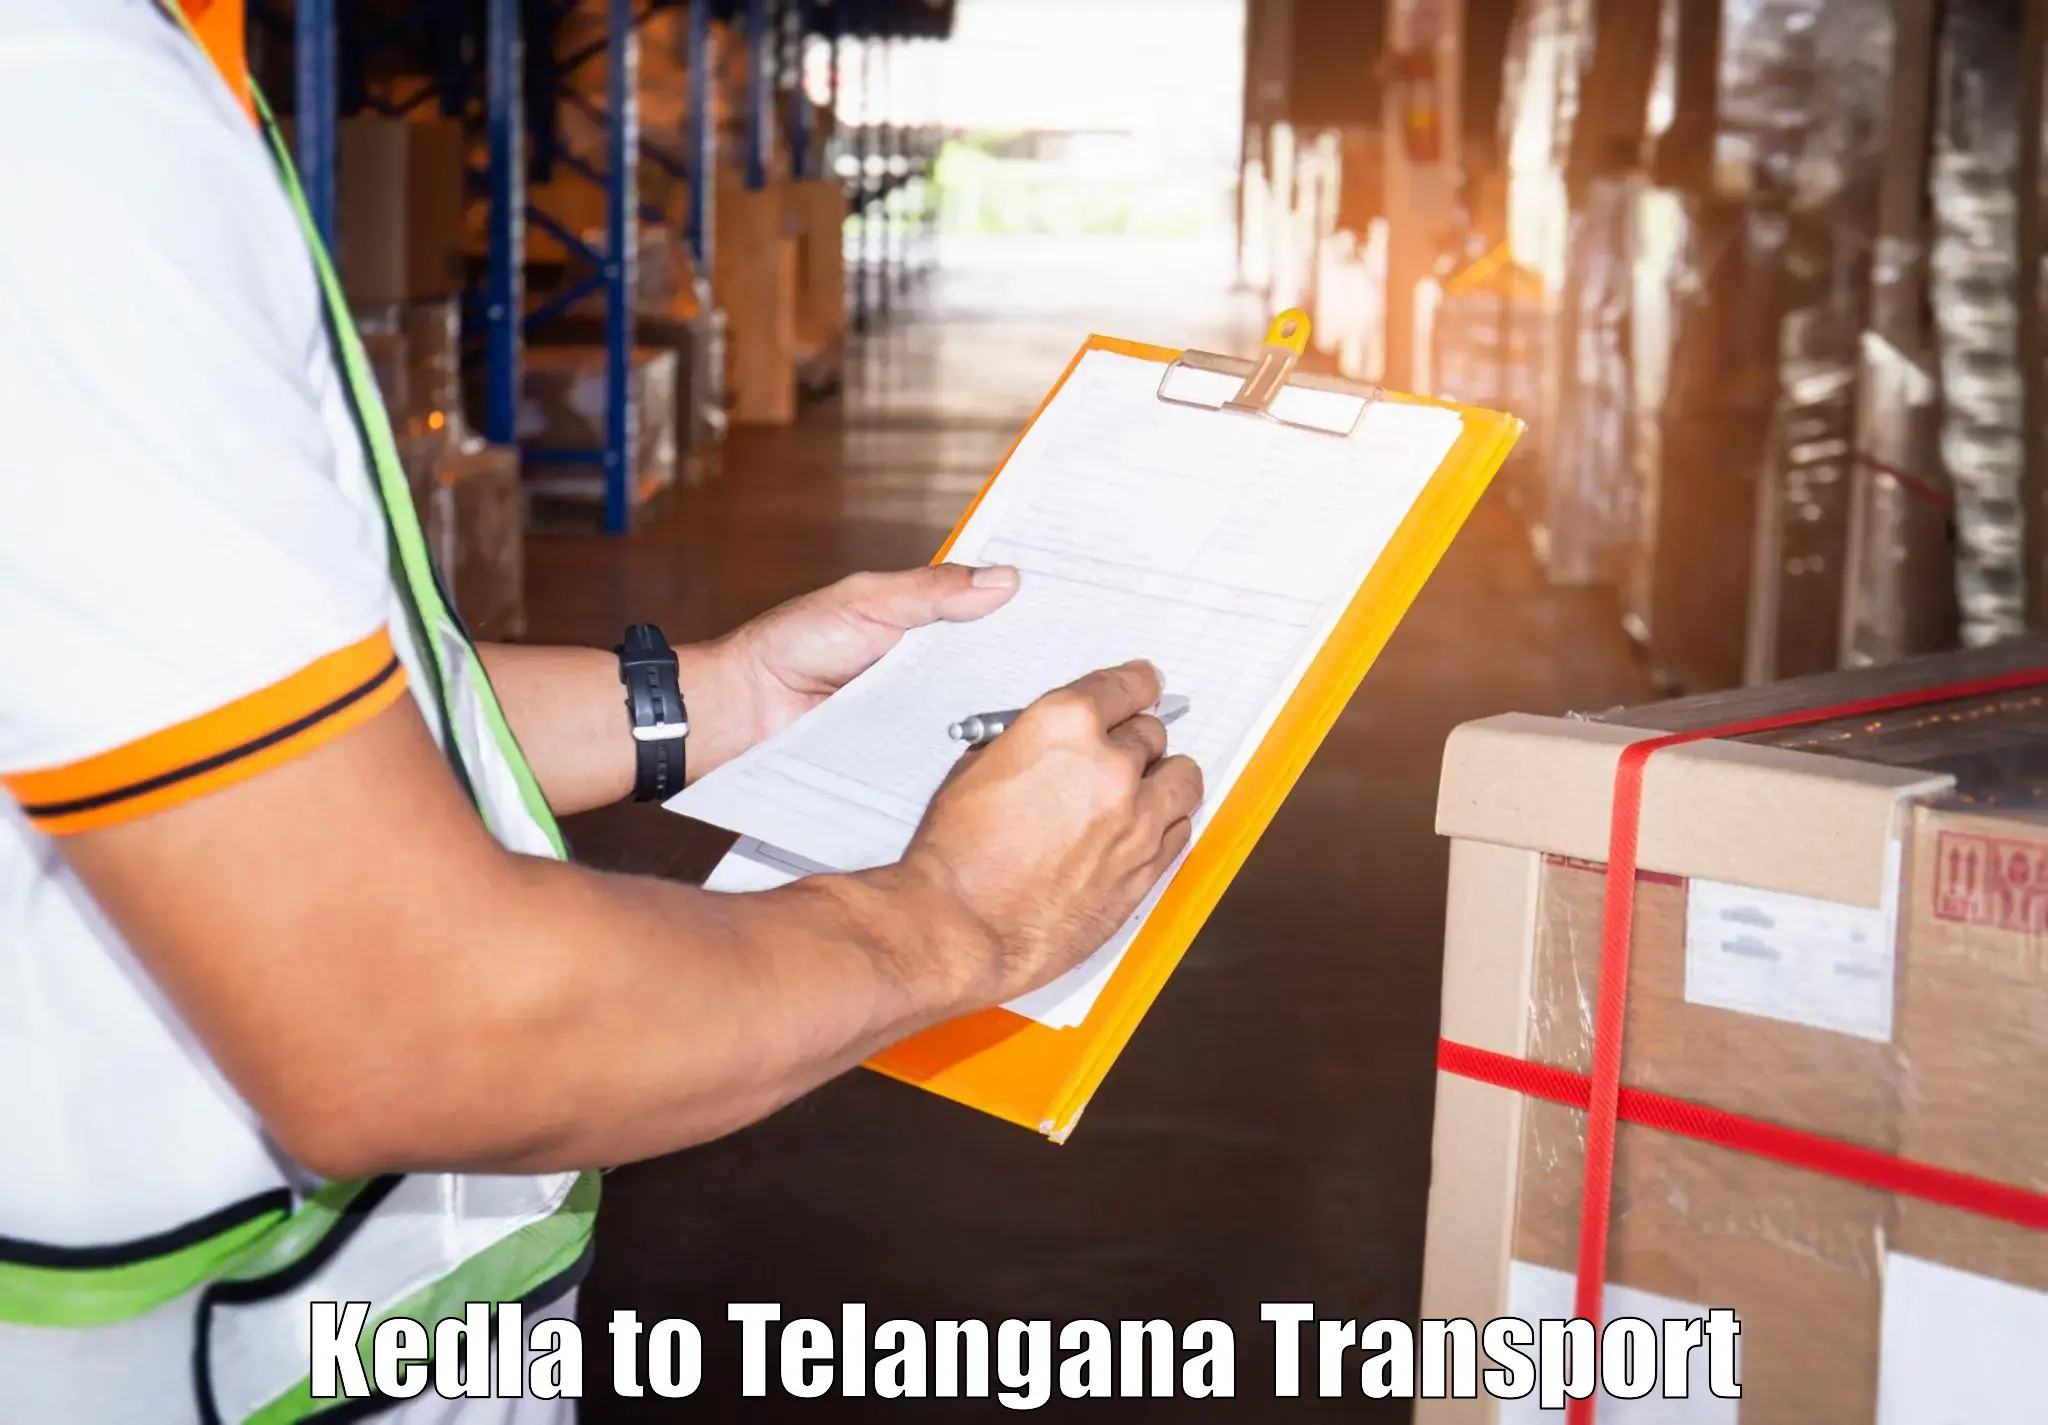 Nationwide transport services Kedla to Koratla